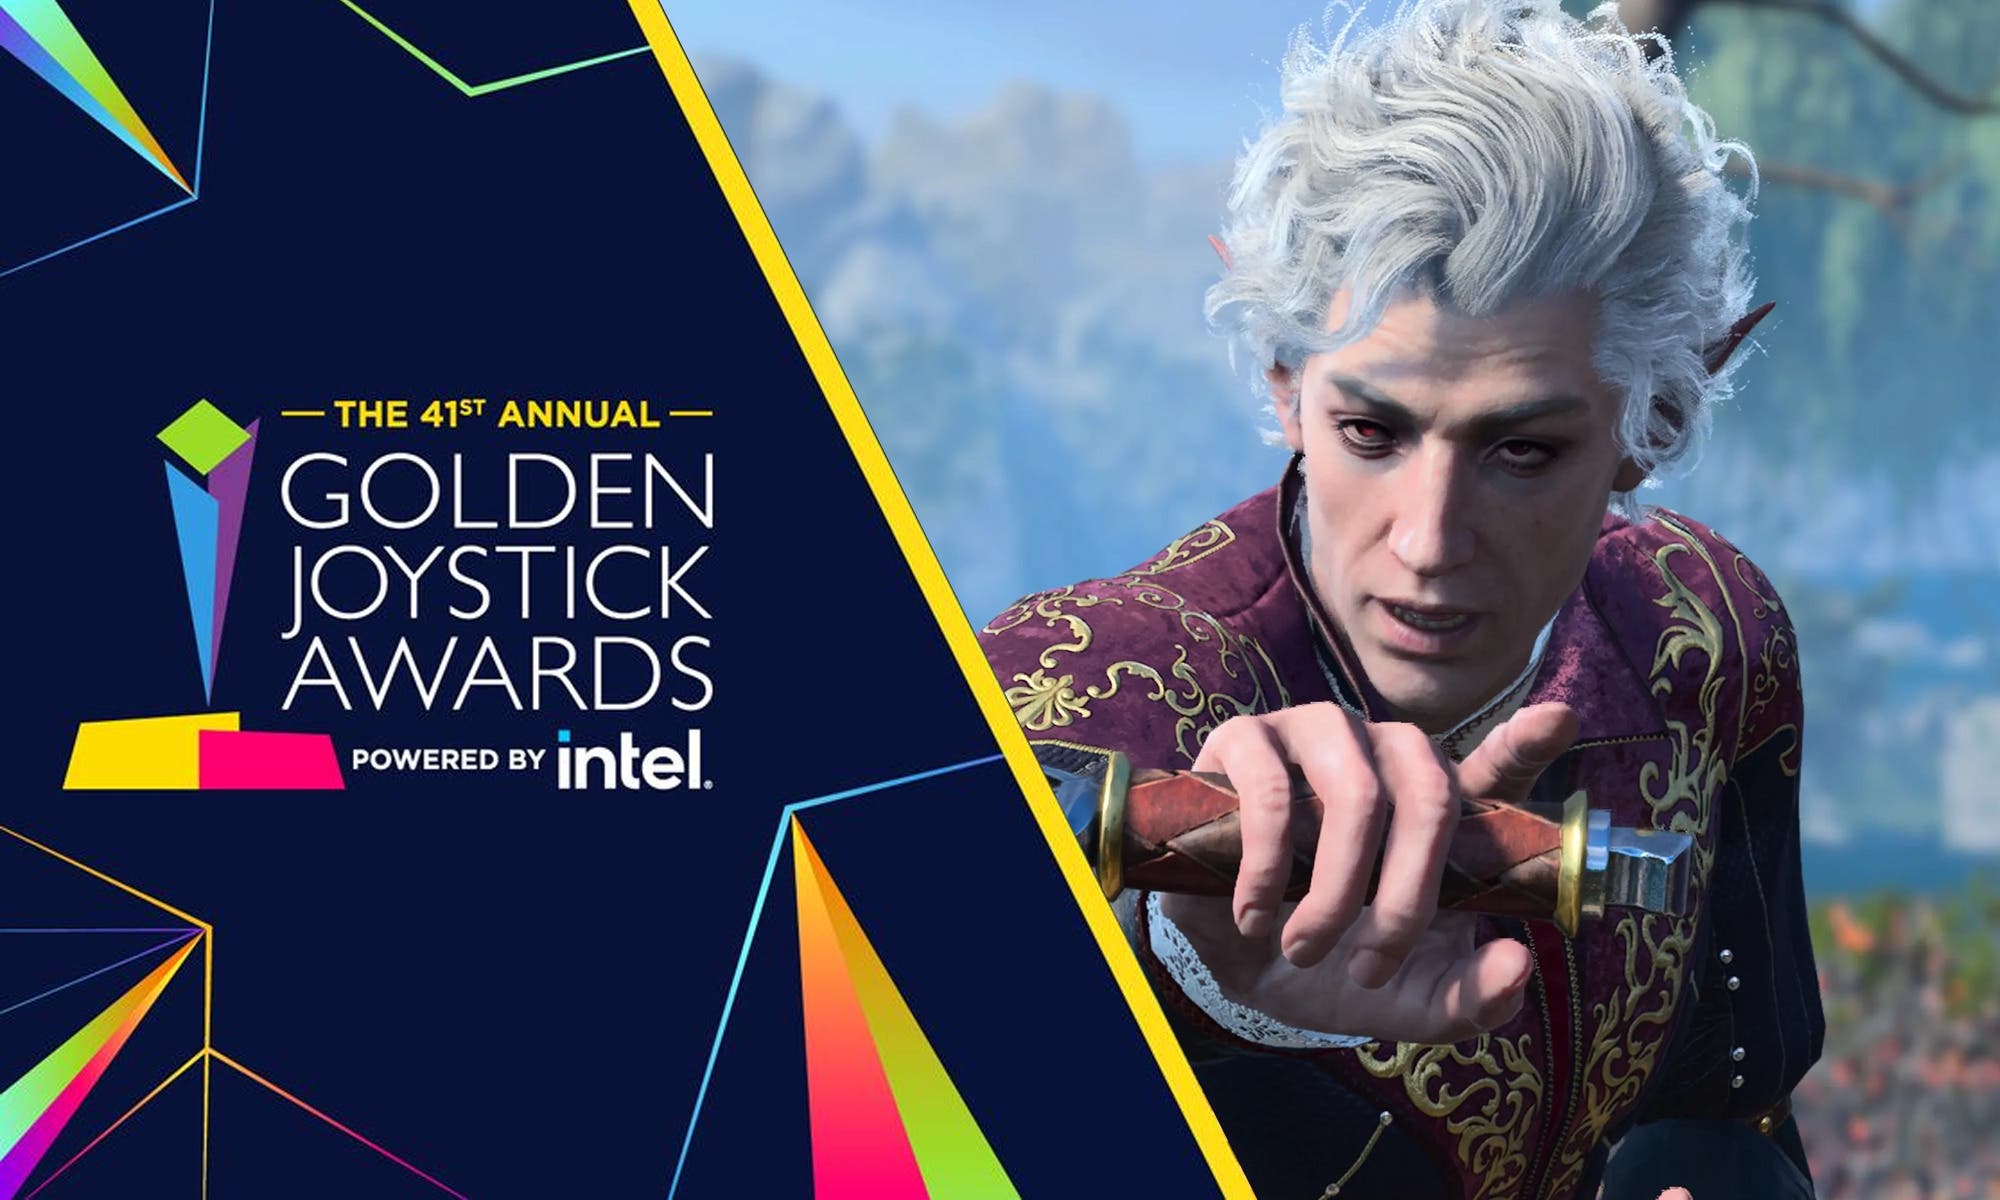 Golden Joystick Awards 2023 elege Baldur's Gate 3 como Jogo do Ano